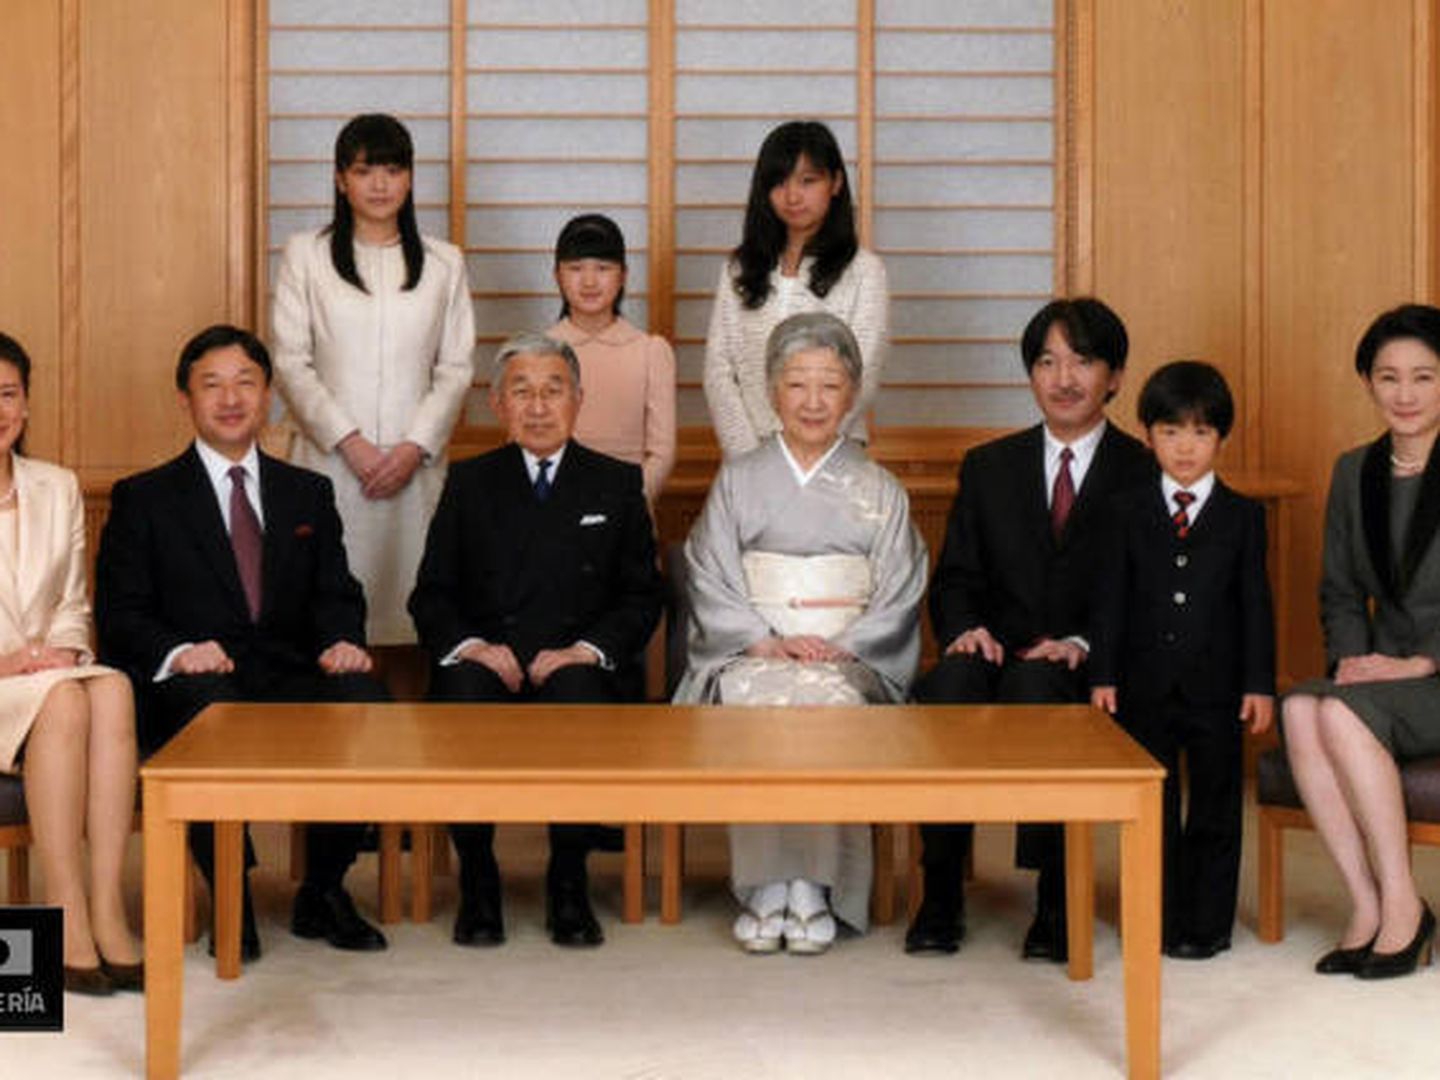 Descubre quién es quién en la familia imperial de Japón (Galería)